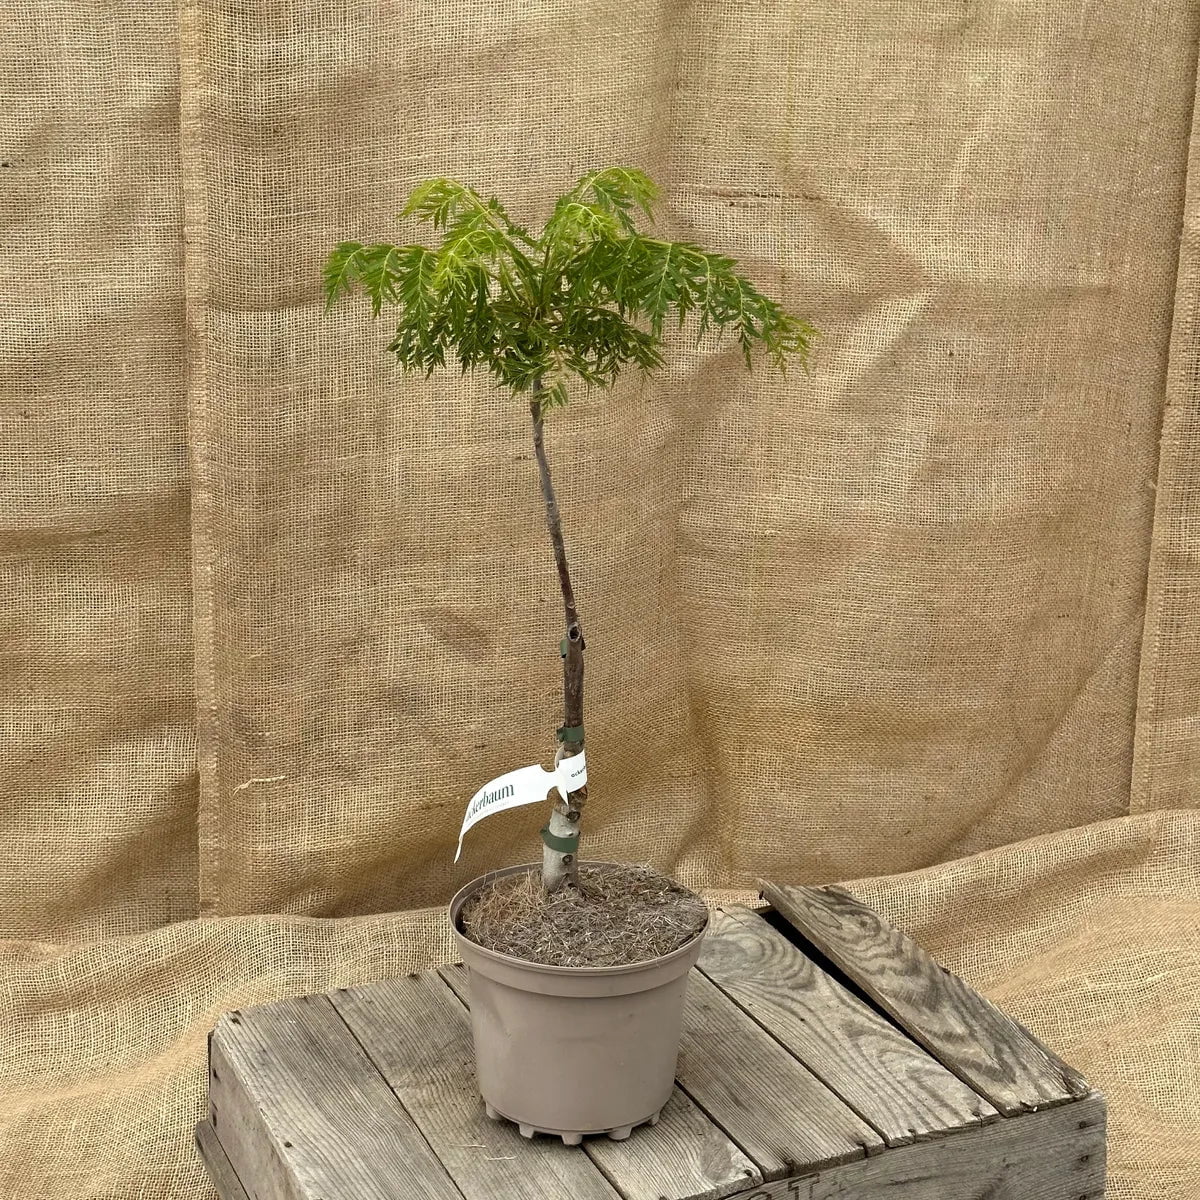 ackerbaum Schwarznussbaum - Lacciniata kaufen